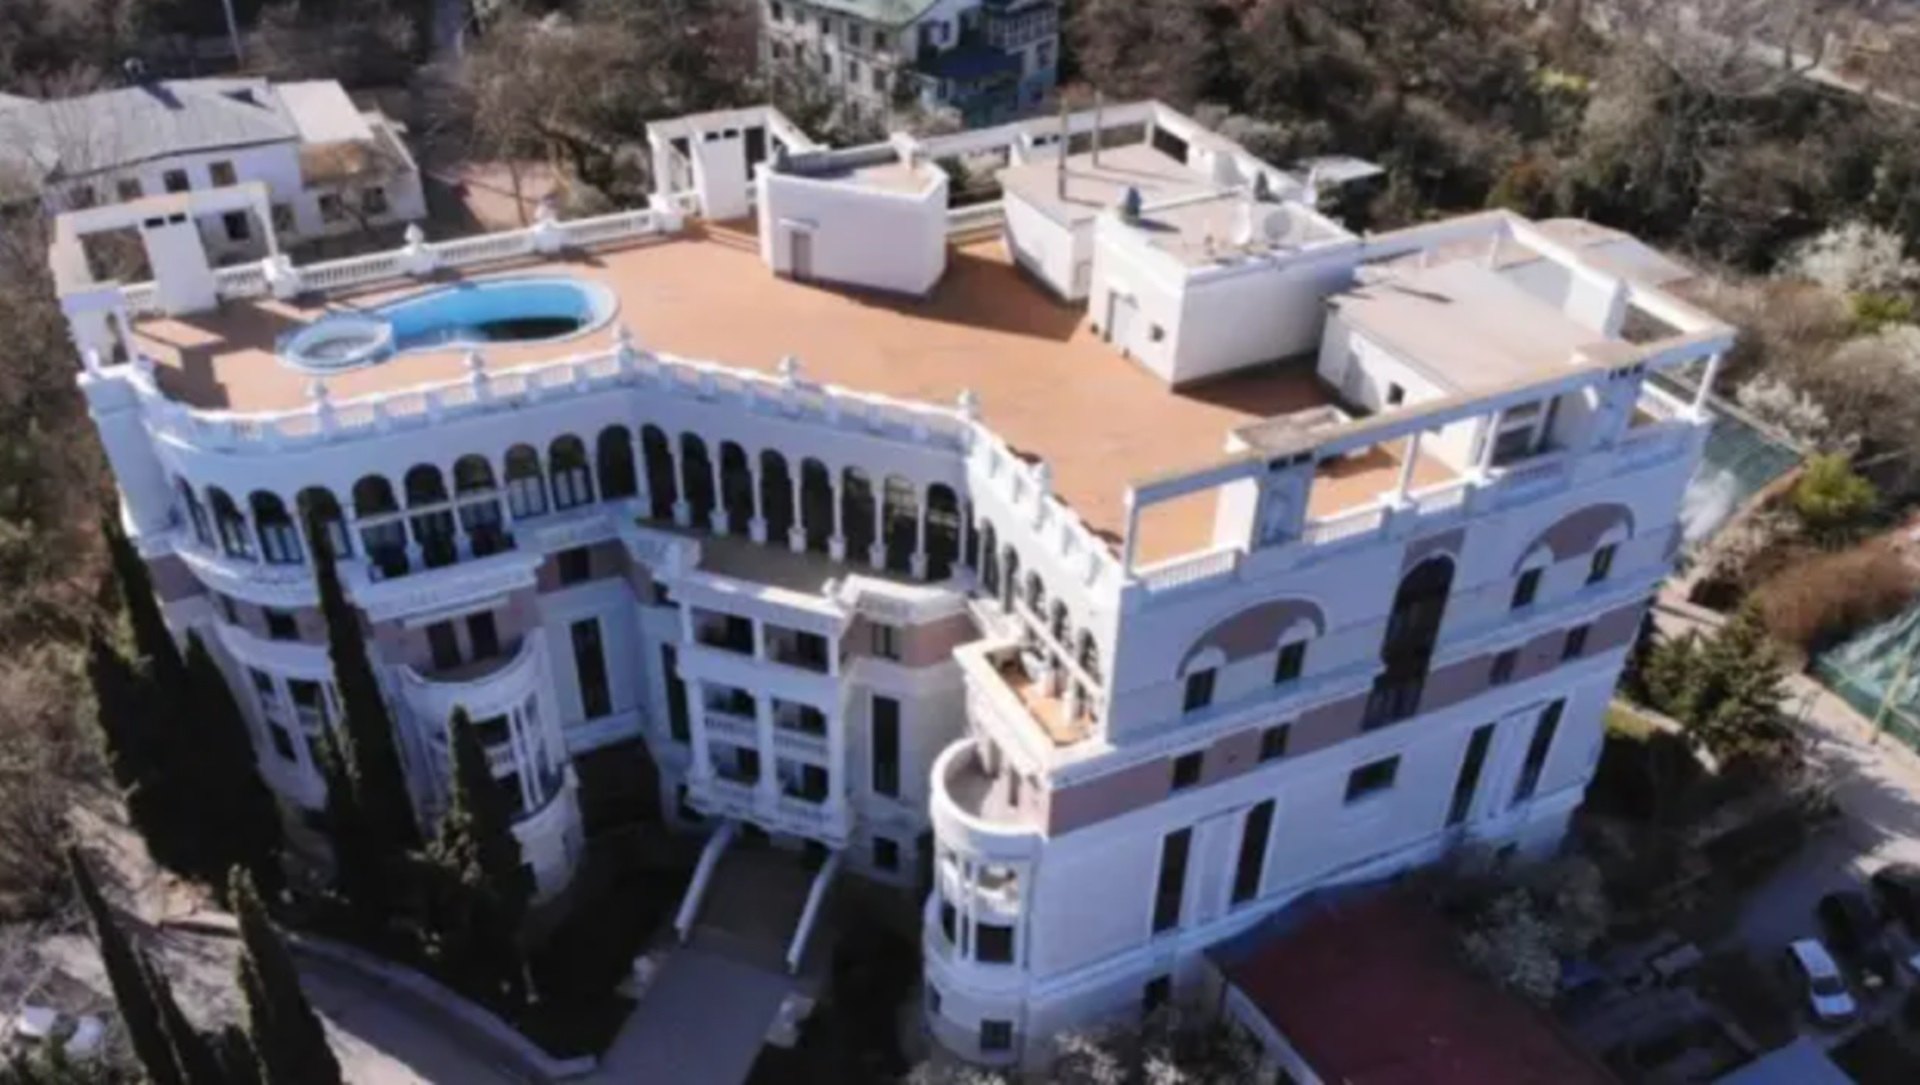 Subhastat per gairebé mig milió d'euros l'apartament confiscat de Zelenski a Crimea